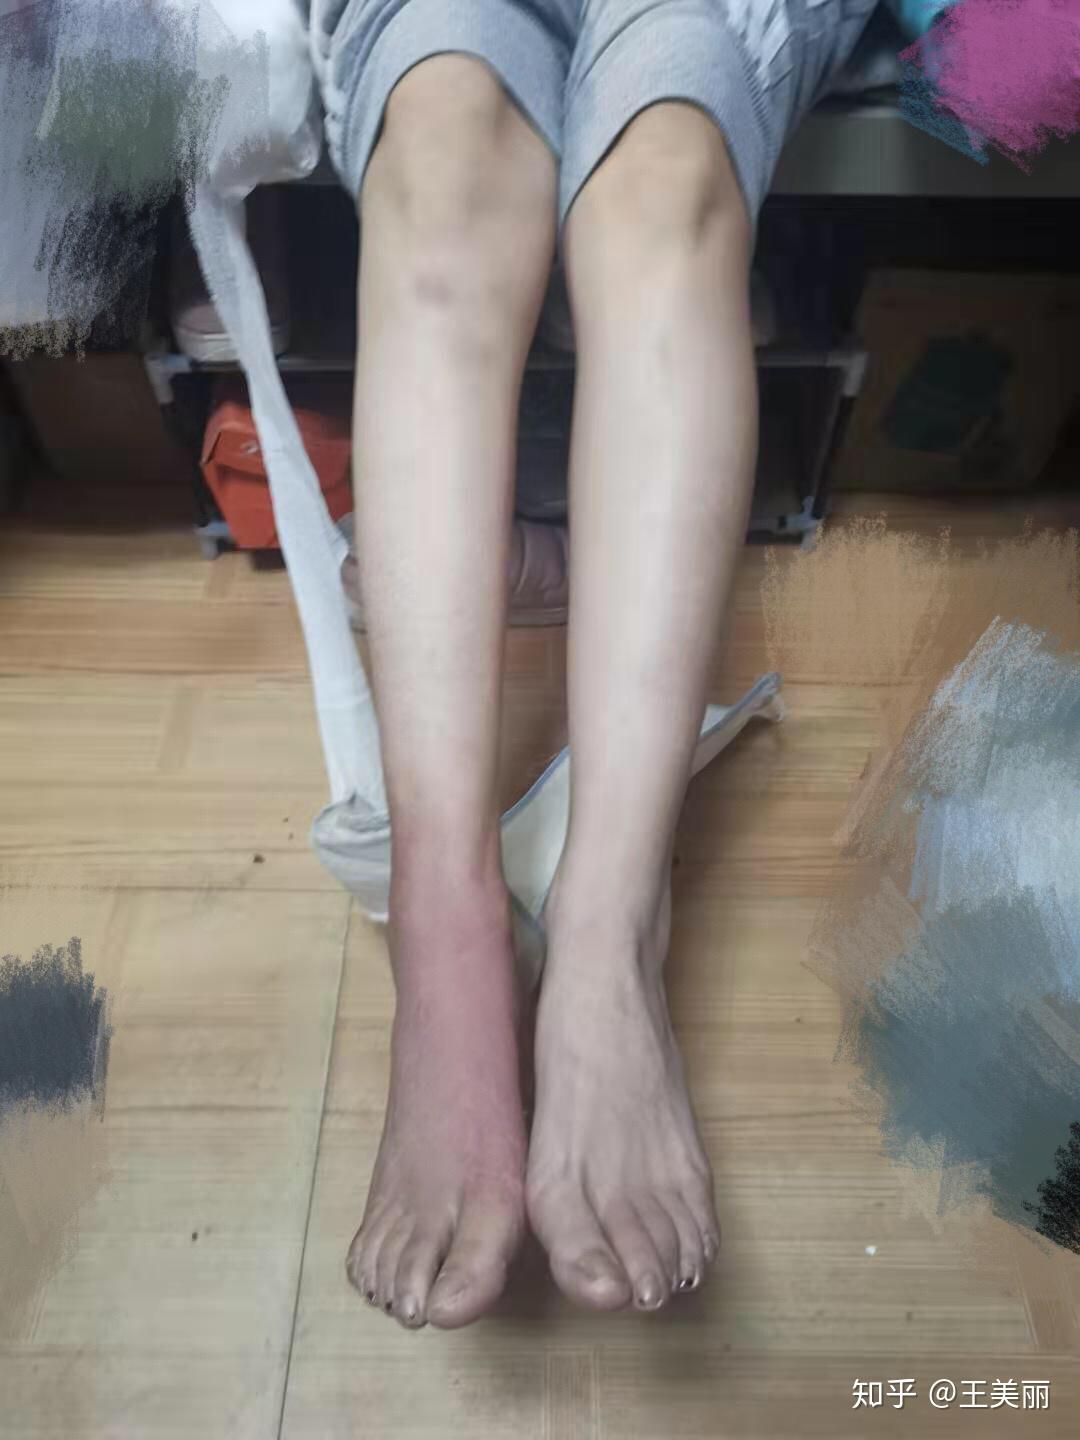 如何让左腿跟拆了石膏肌肉萎缩的右腿一样瘦? 